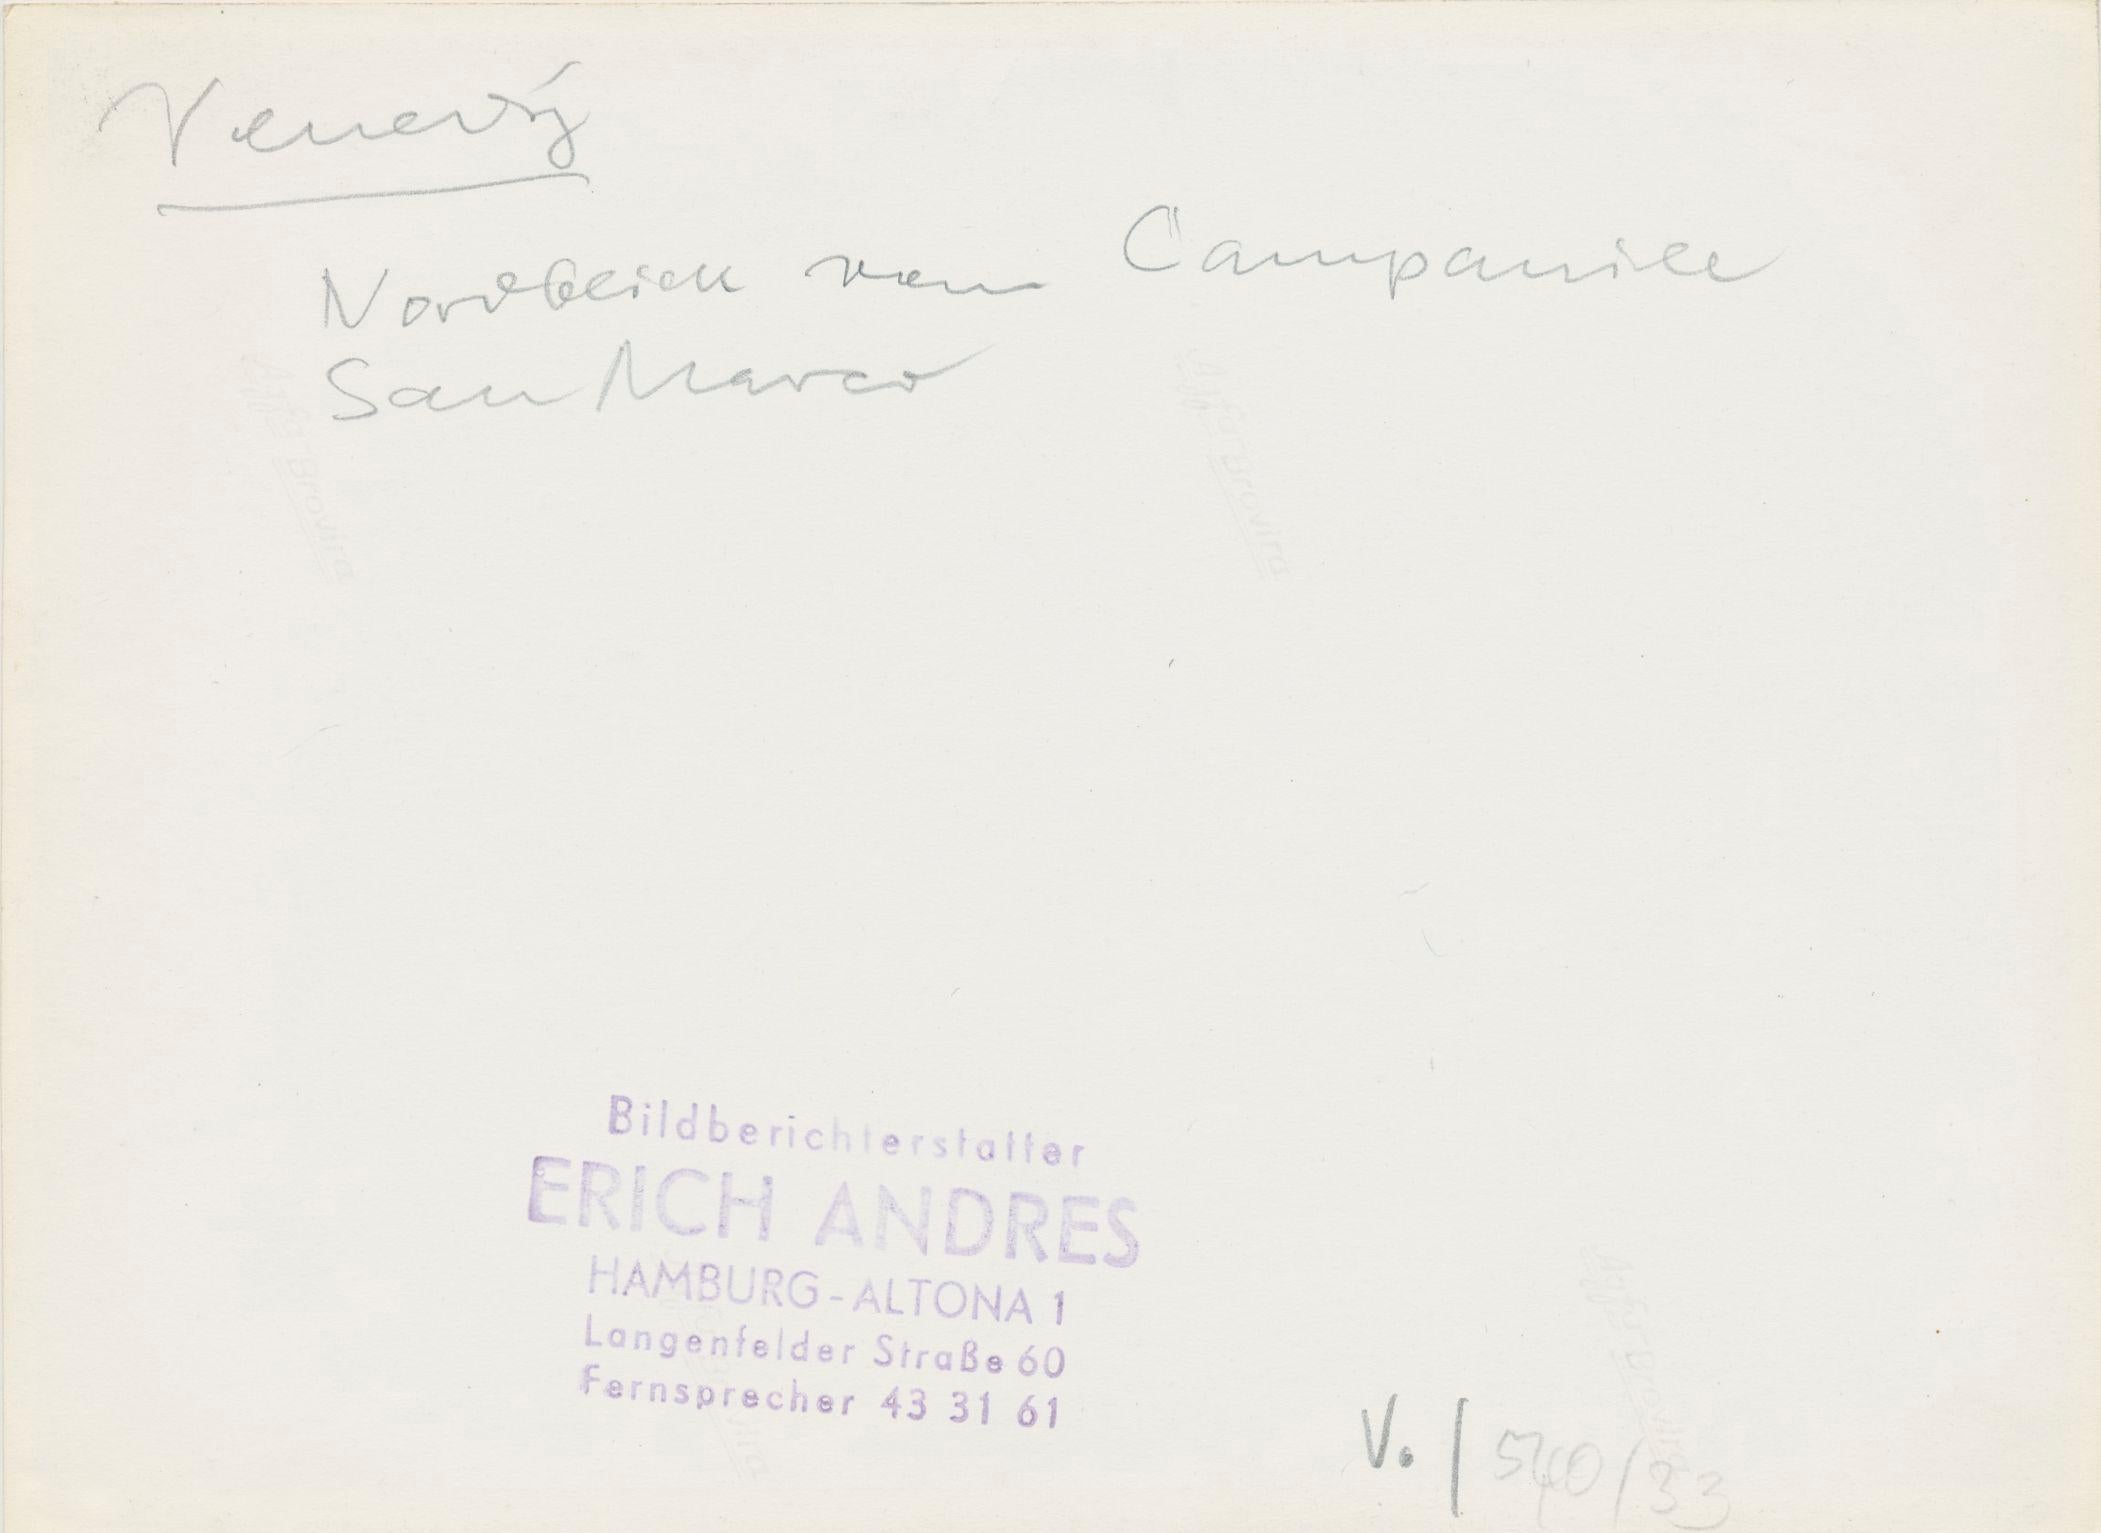 Silbergelatine-Druck von Erich Andres, um 1950.
Andres wurde 1905 in Deutschland geboren und verstarb 1992. Er begann seine Karriere als Fotograf im Jahr 1920. Er war einer der ersten Fotografen, die eine Leica benutzten. Seine Bilder sind heute in